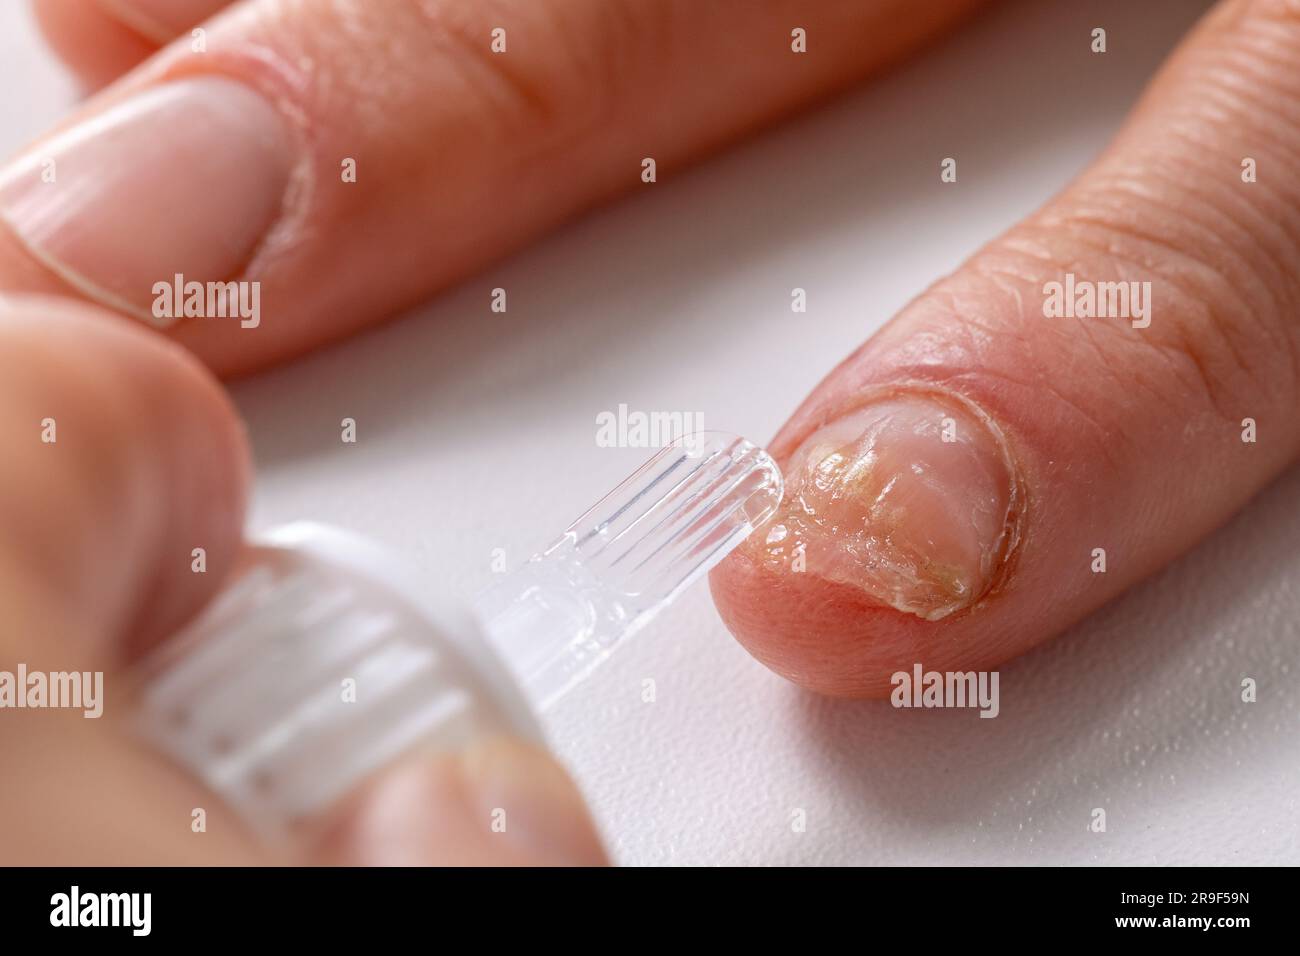 trattamento con infezione delle unghie fungine. applicazione di lacca antifungina amorolfine sull'unghia della mano Foto Stock